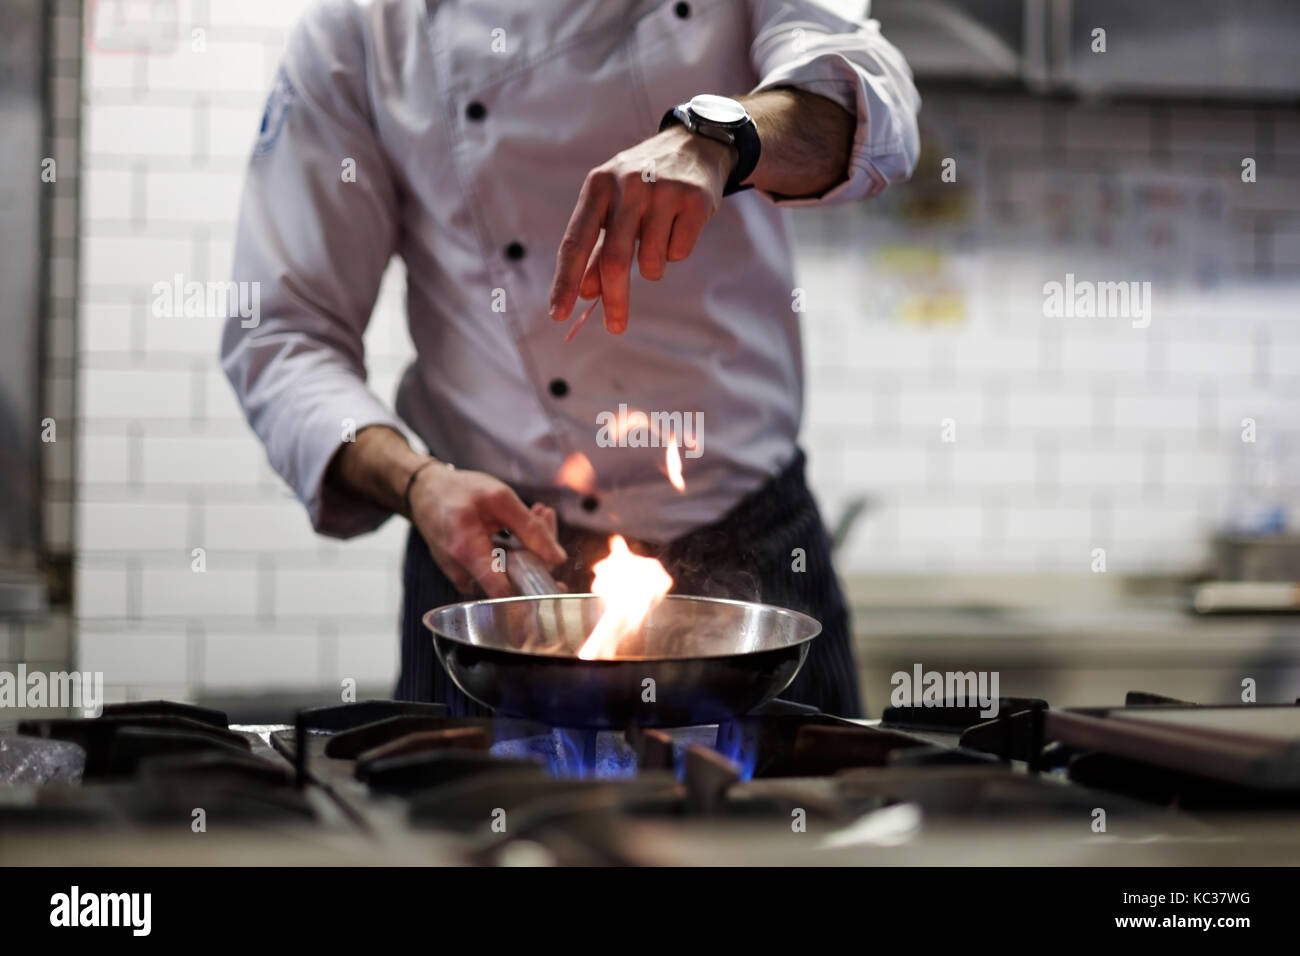 Un homme cuit la cuisson friteuses dans un feu de cuisine. Banque D'Images